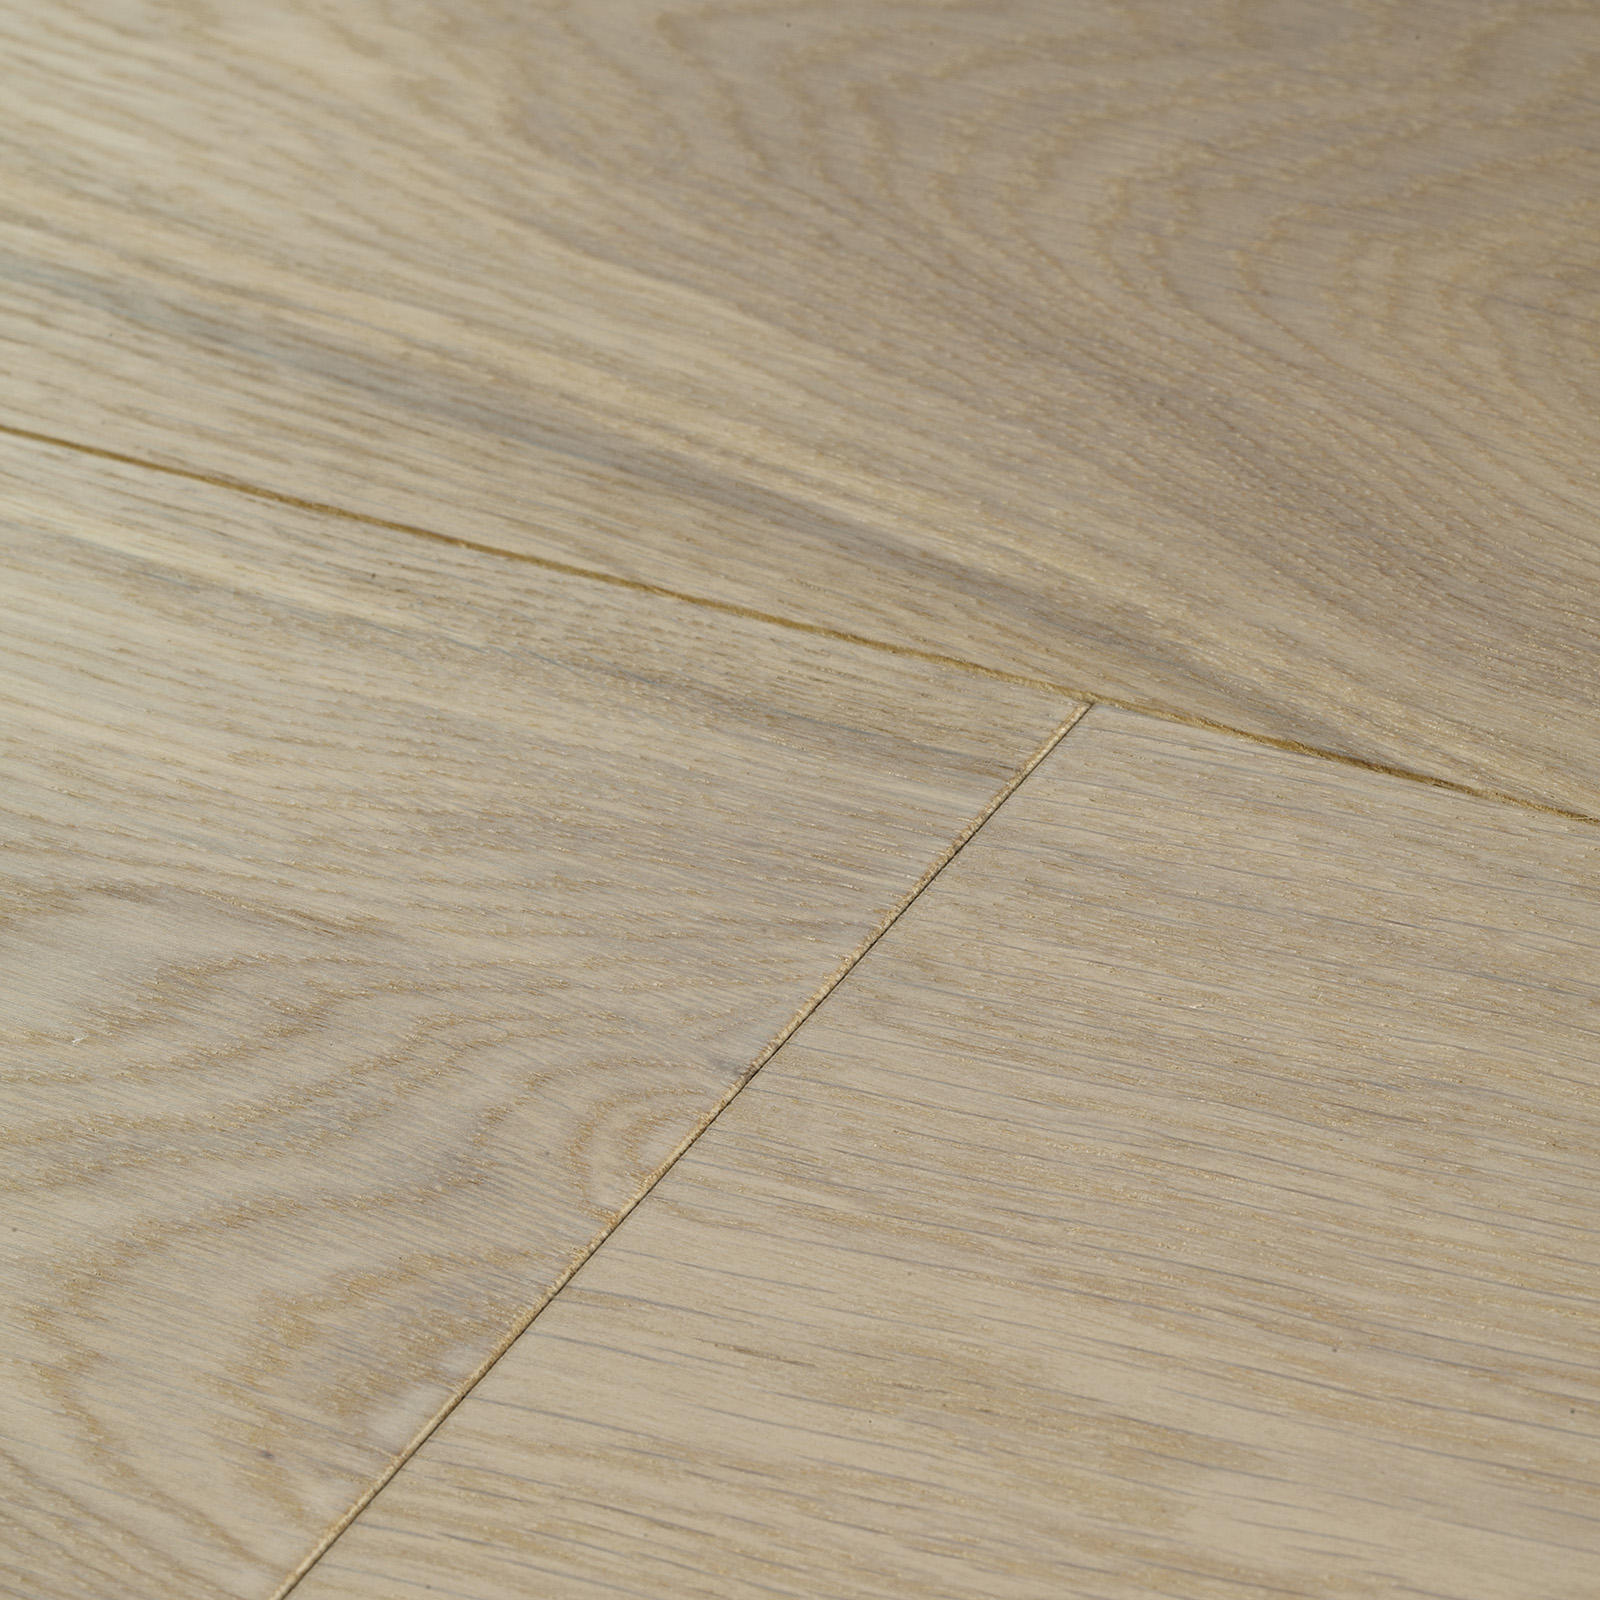 Engineered hardwood floor in white tones. Harlech white oiled oak